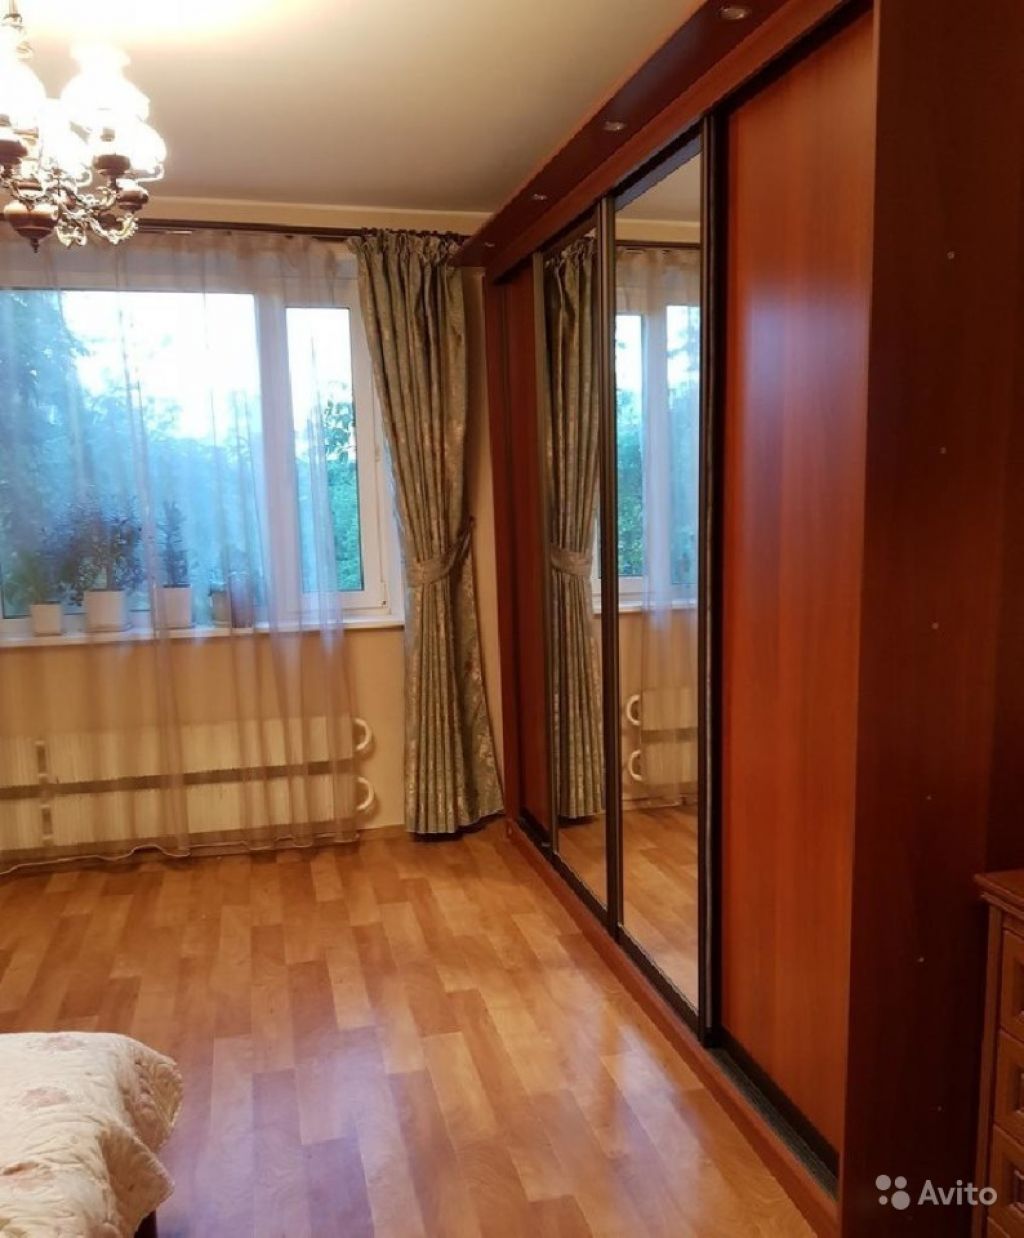 Продам квартиру 2-к квартира 52 м² на 3 этаже 12-этажного панельного дома в Москве. Фото 1